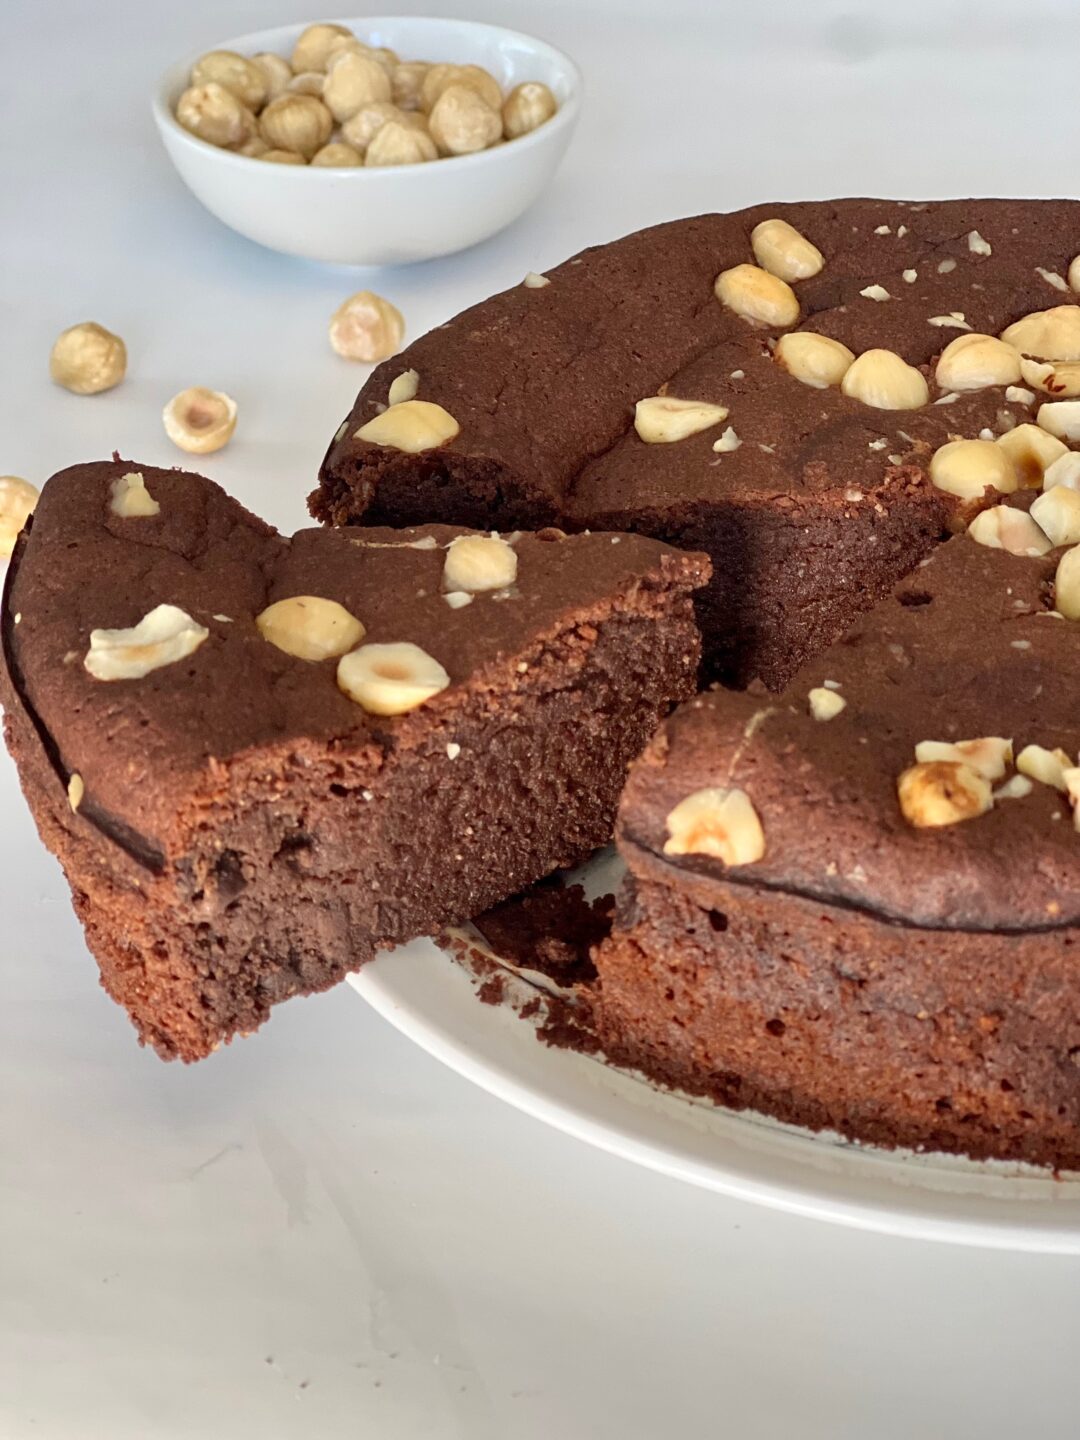 עוגת שוקולד לפסח נימוחה ועסיסית ללא קמח - מתוק בריא